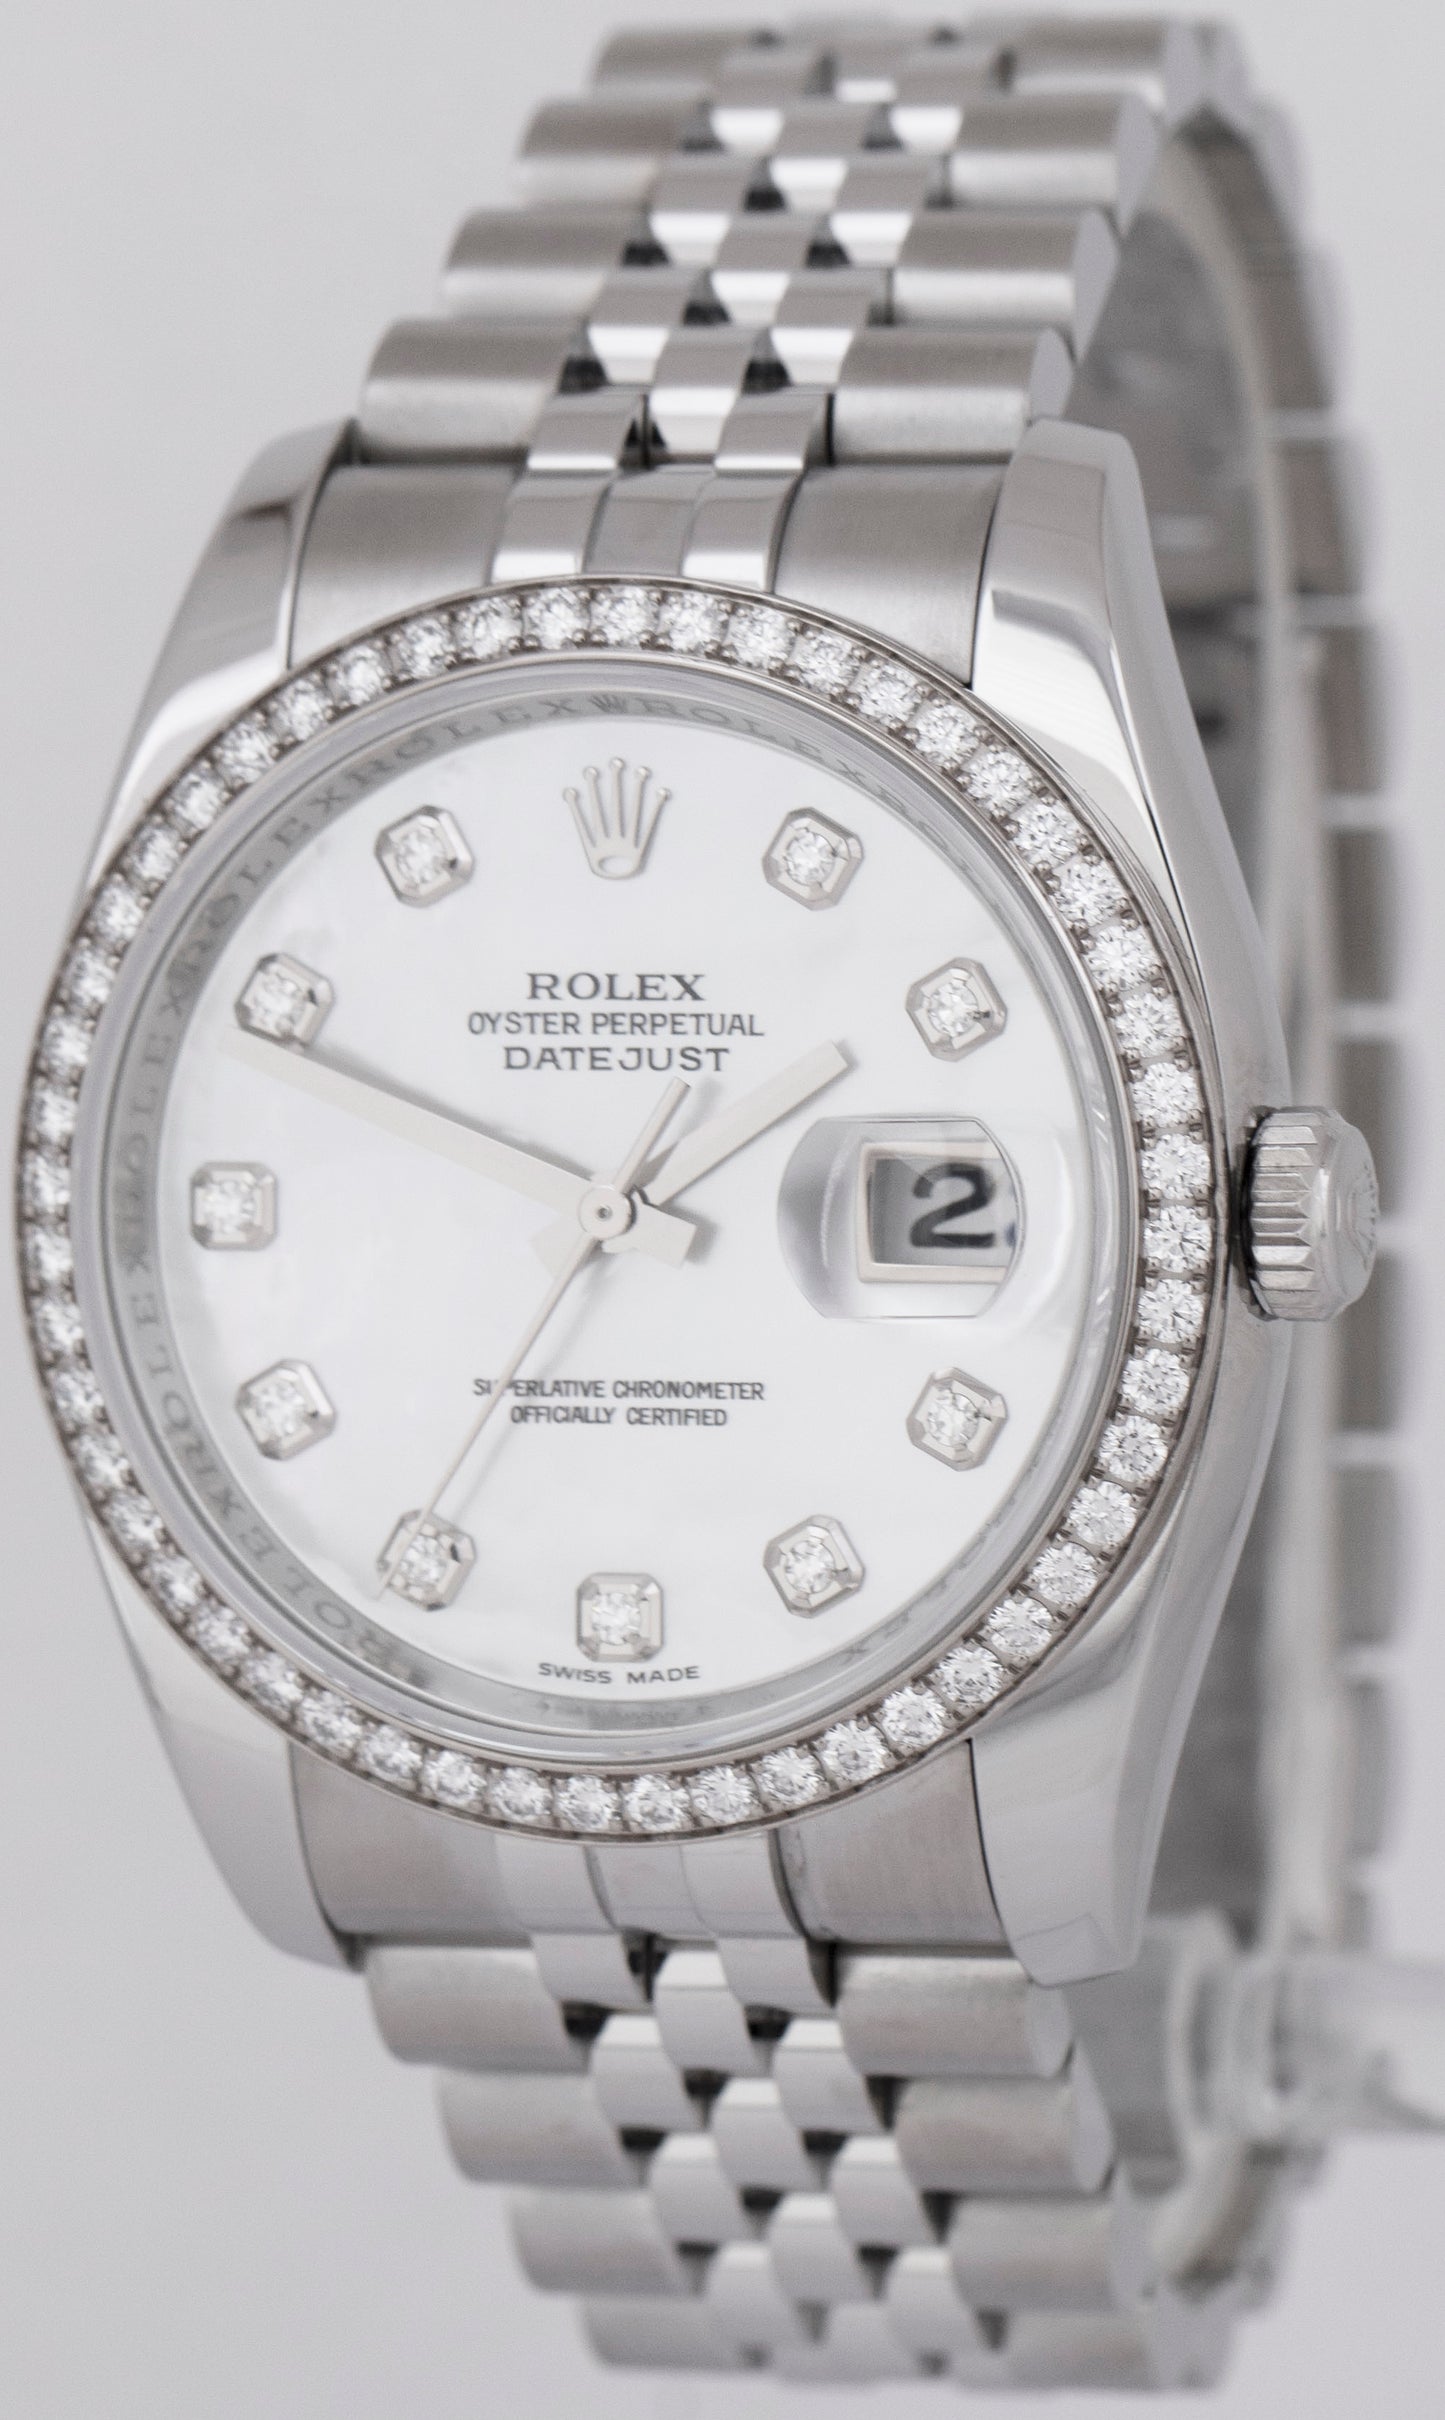 MINT PAPERS Rolex DateJust 36mm 18K MOP DIAMOND Steel Jubilee Watch 116244 BOX